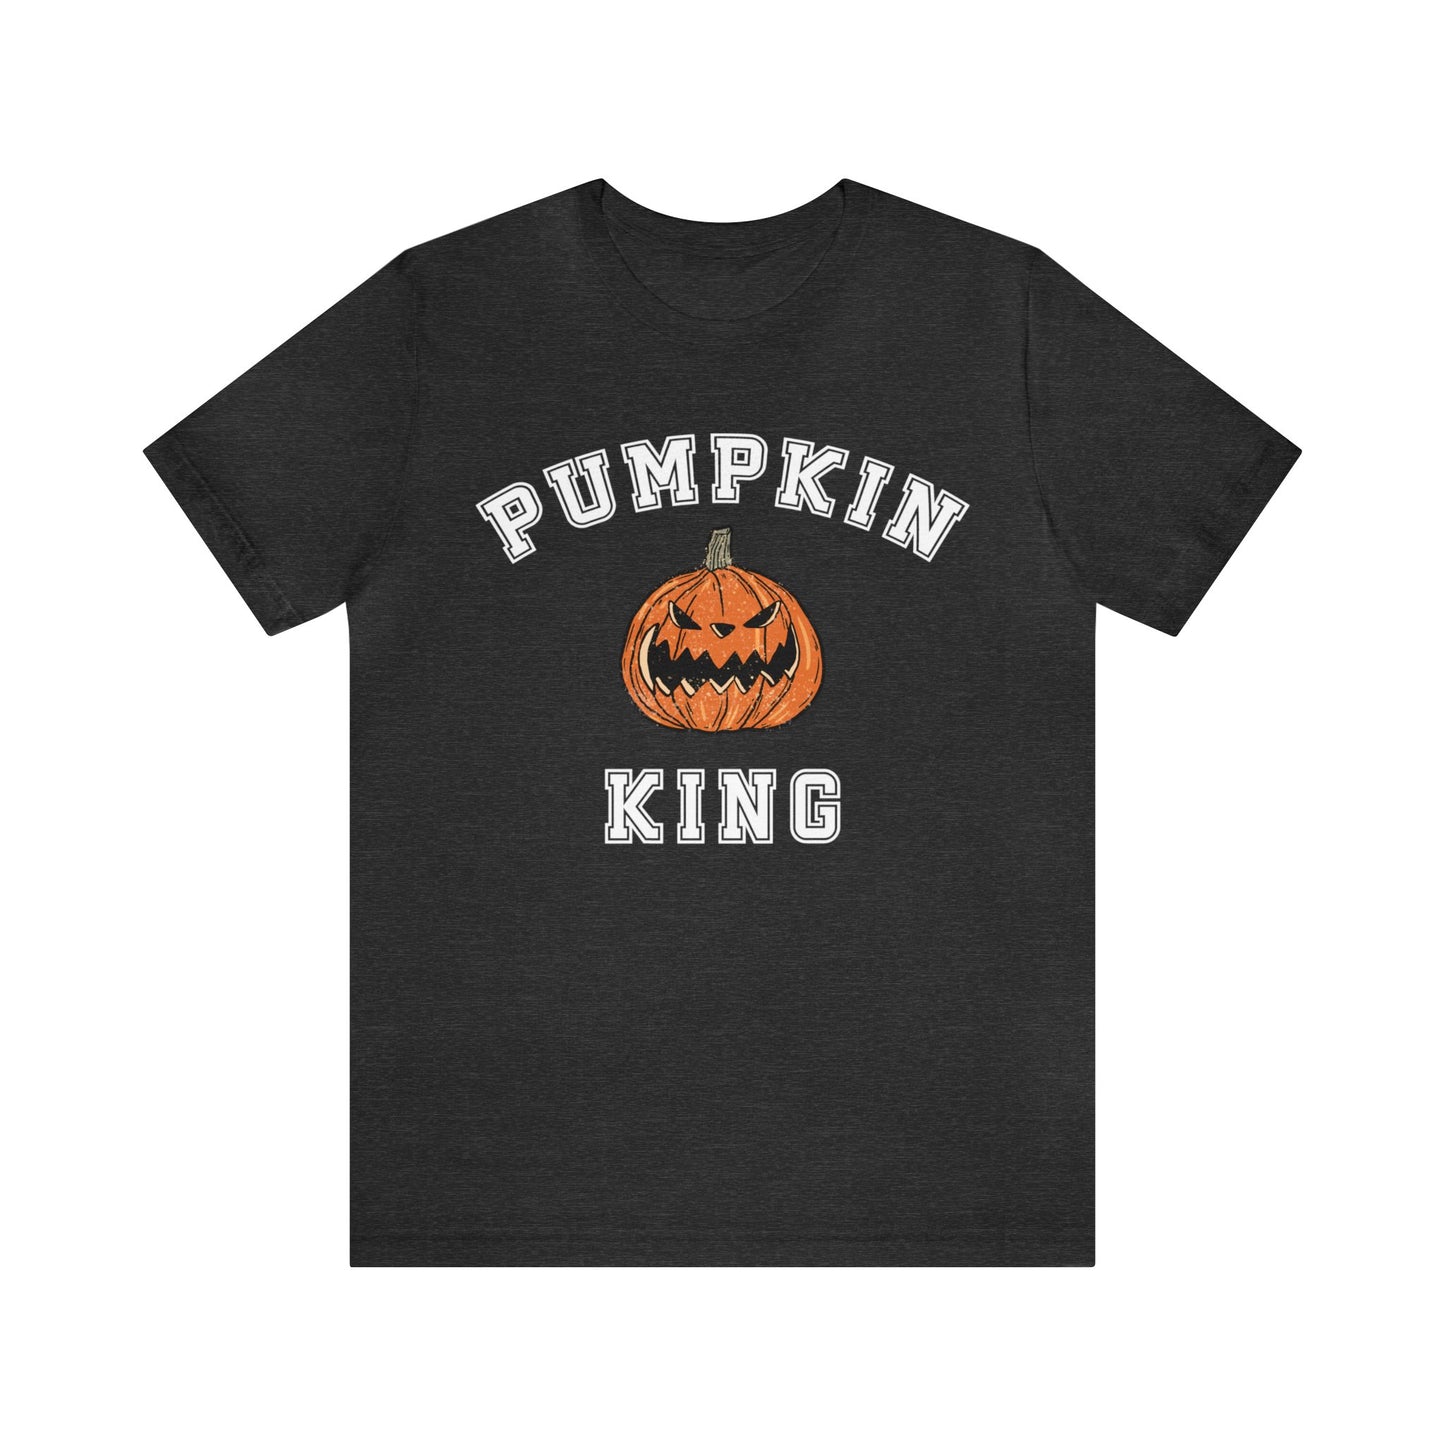 Pumpkin King